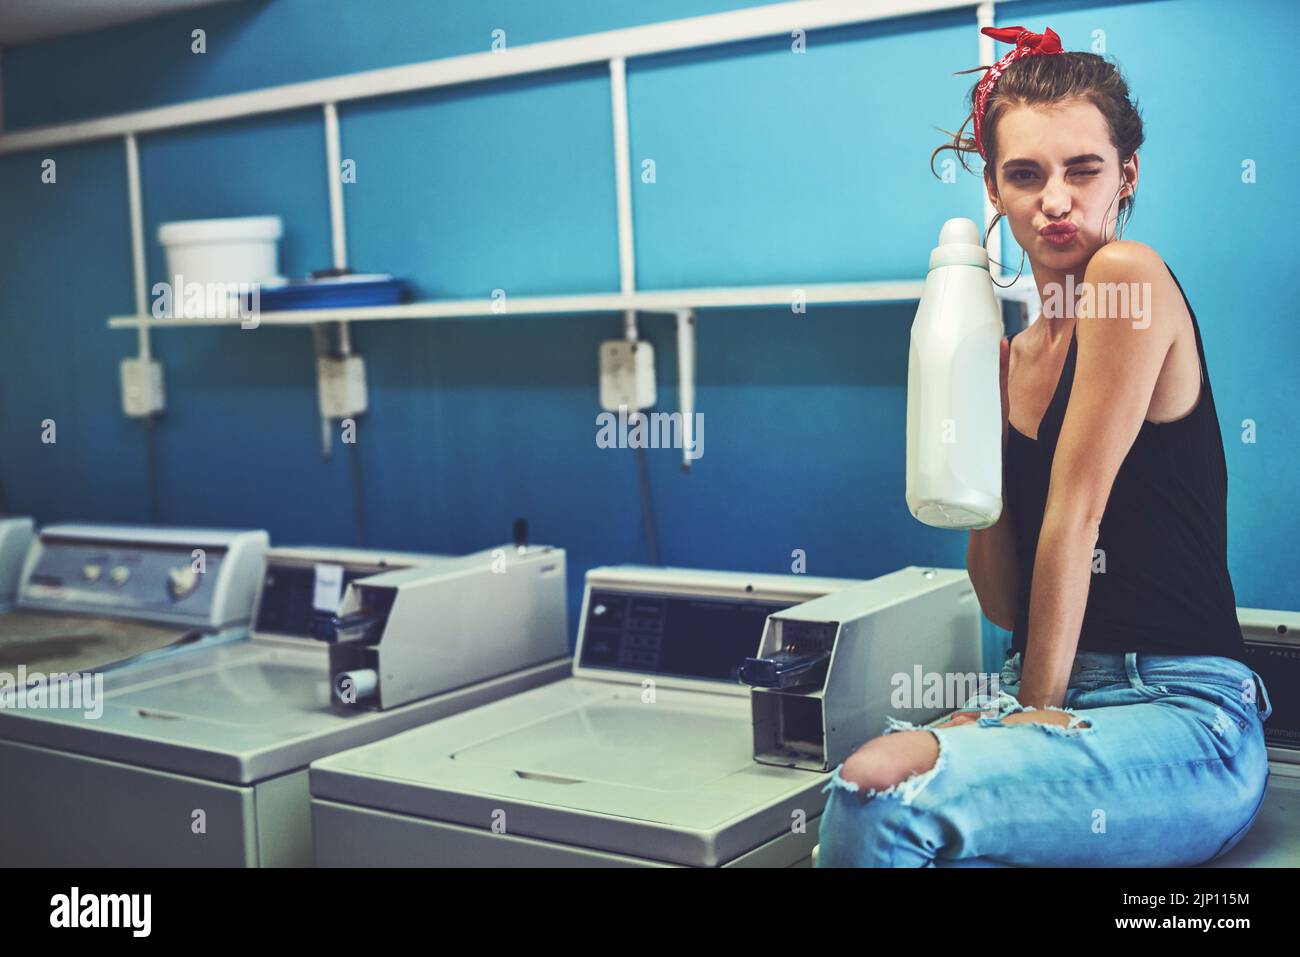 Passons au nettoyage. Portrait d'une jeune femme attirante assise sur une machine à laver tout en tenant l'eau de Javel pour laver son linge avec l'intérieur d'un linge Banque D'Images